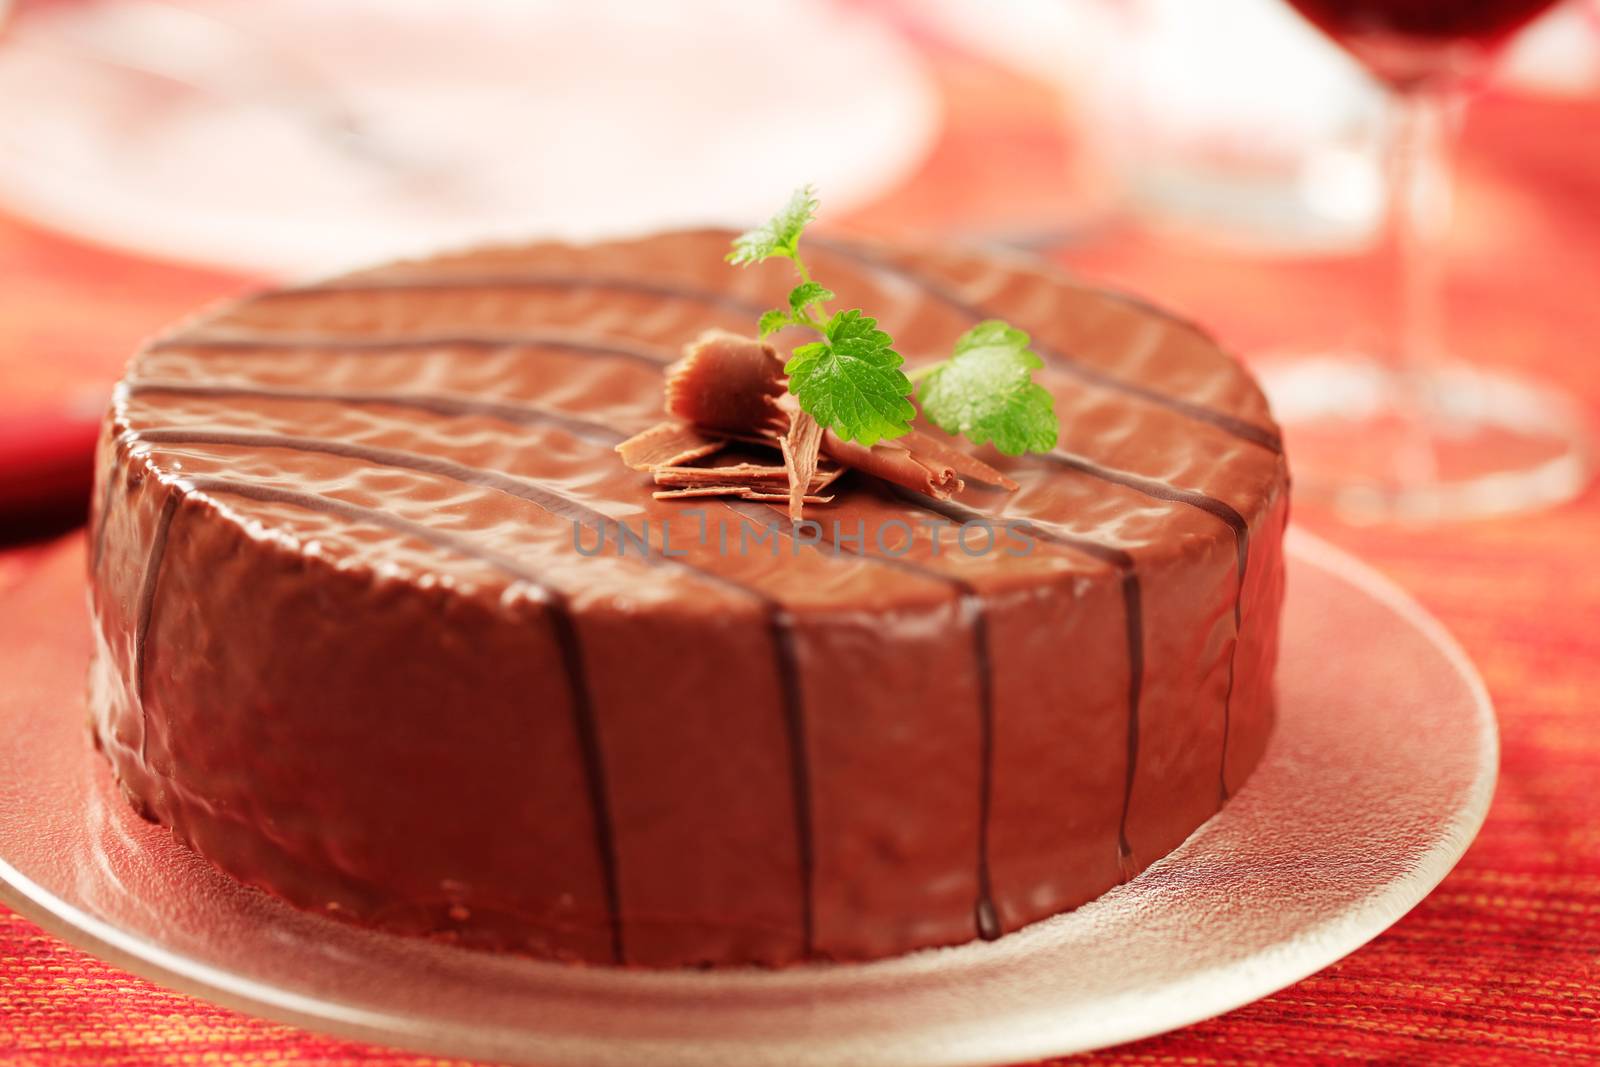 Chocolate glazed cake by Digifoodstock